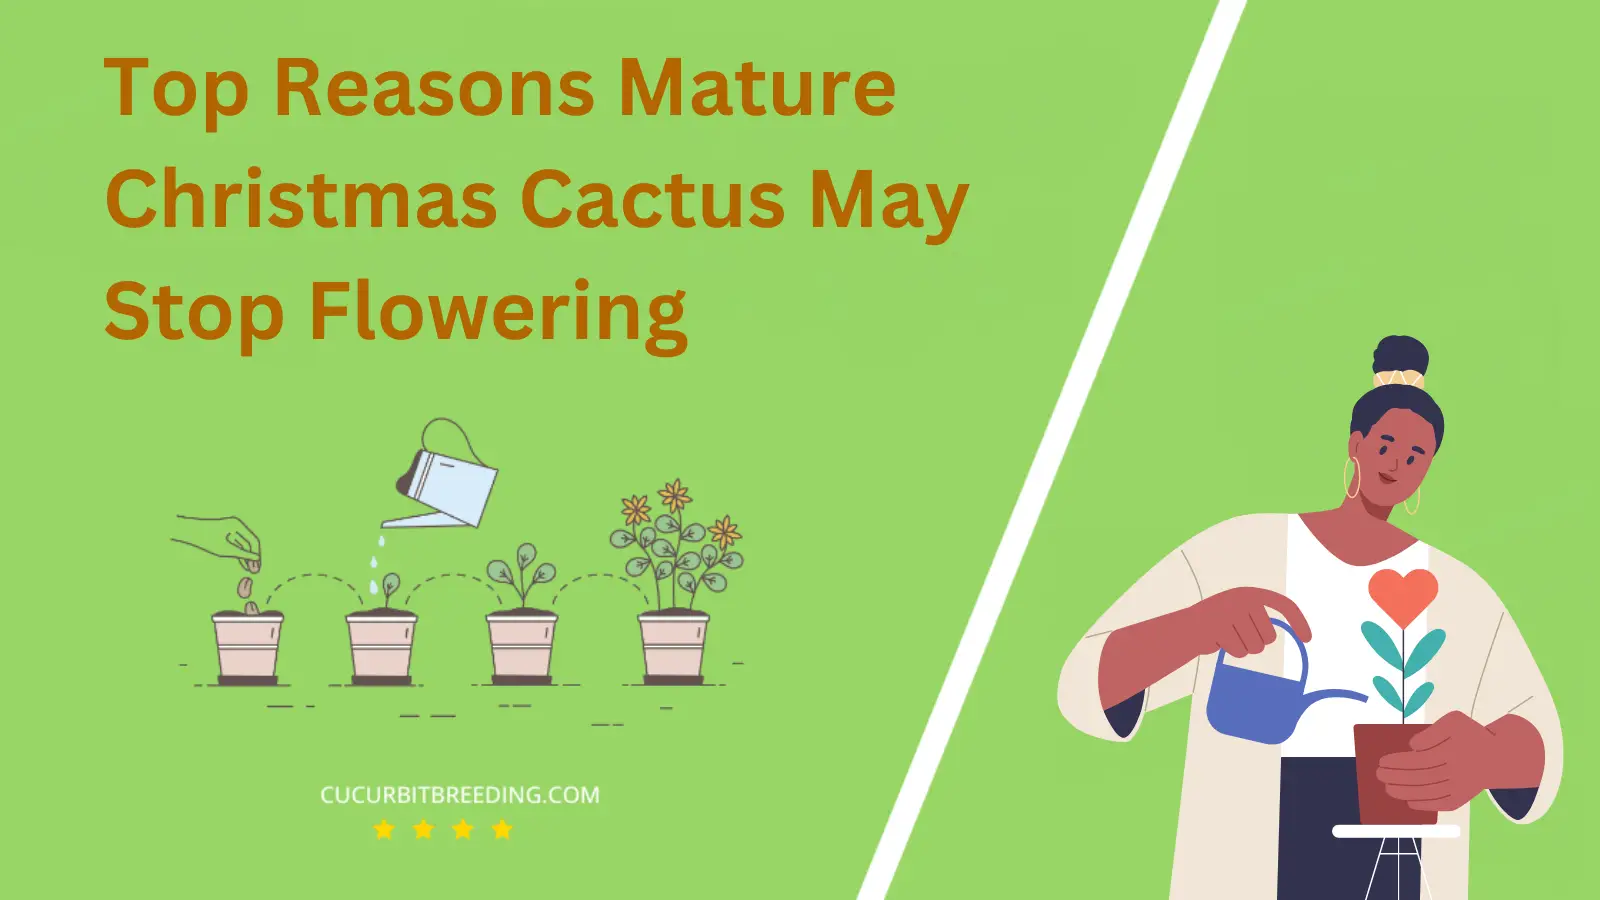 Top Reasons Mature Christmas Cactus May Stop Flowering